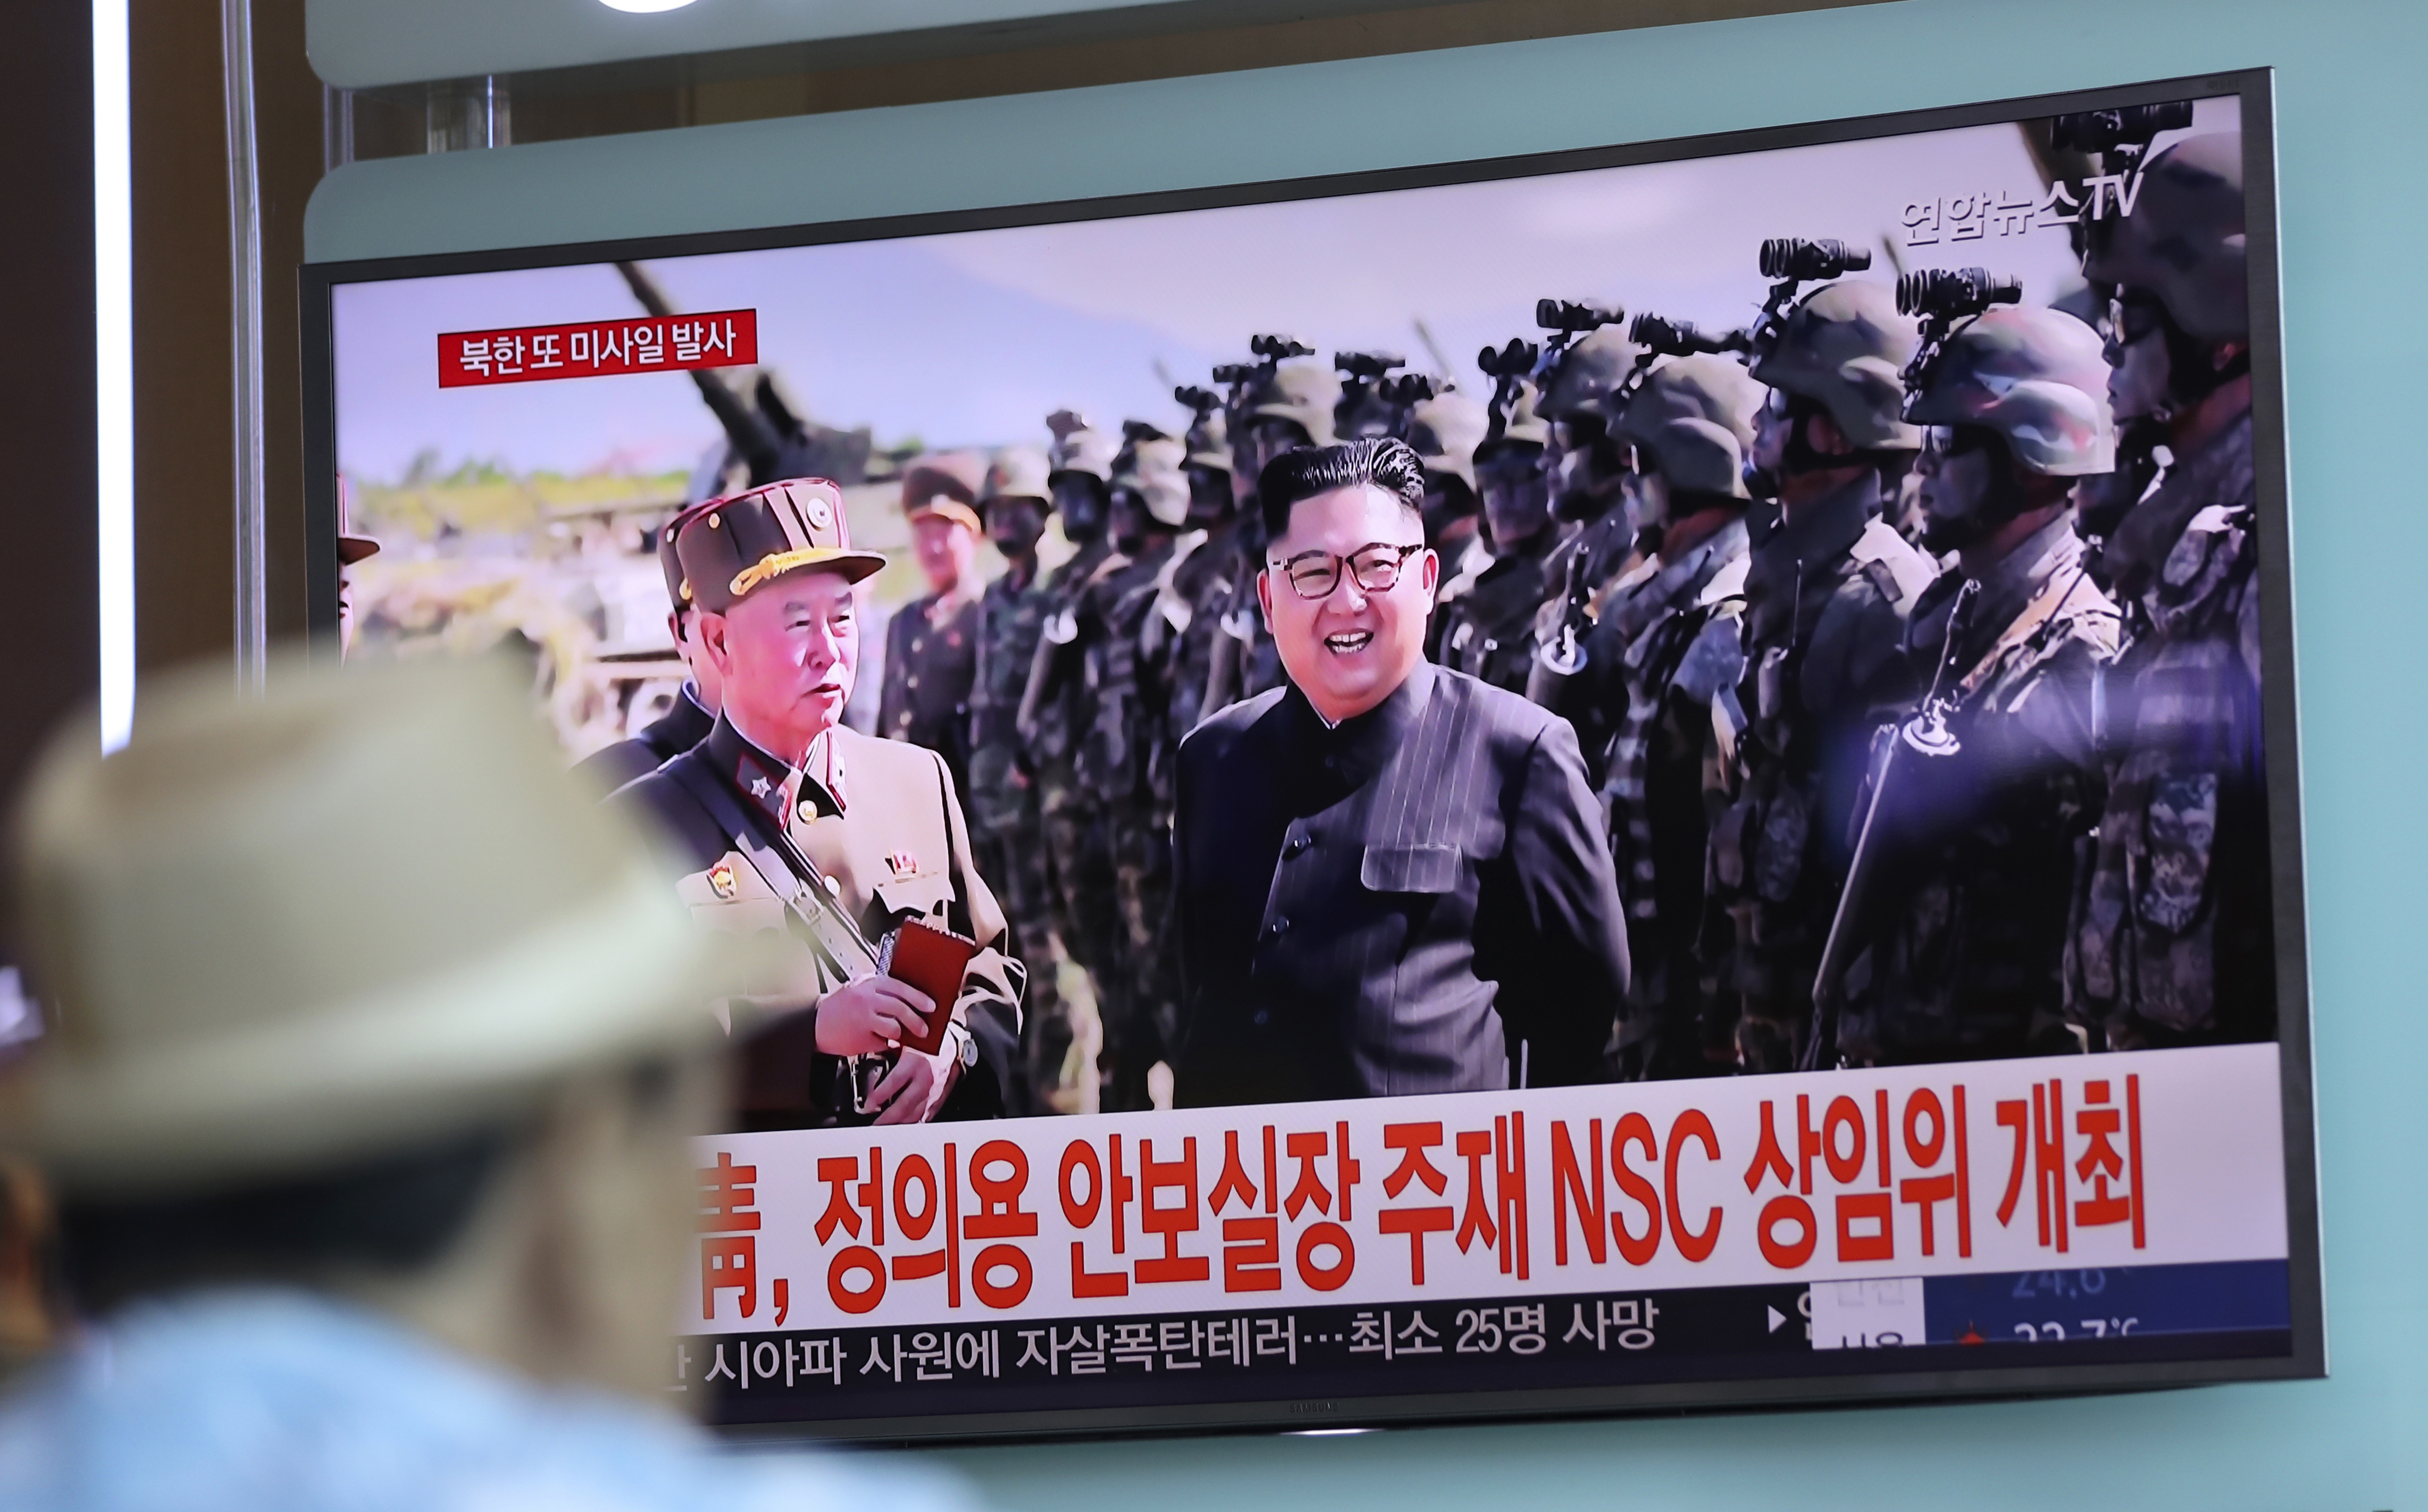 coreadelsur investiga supuesto ensayo nuclear norcorea